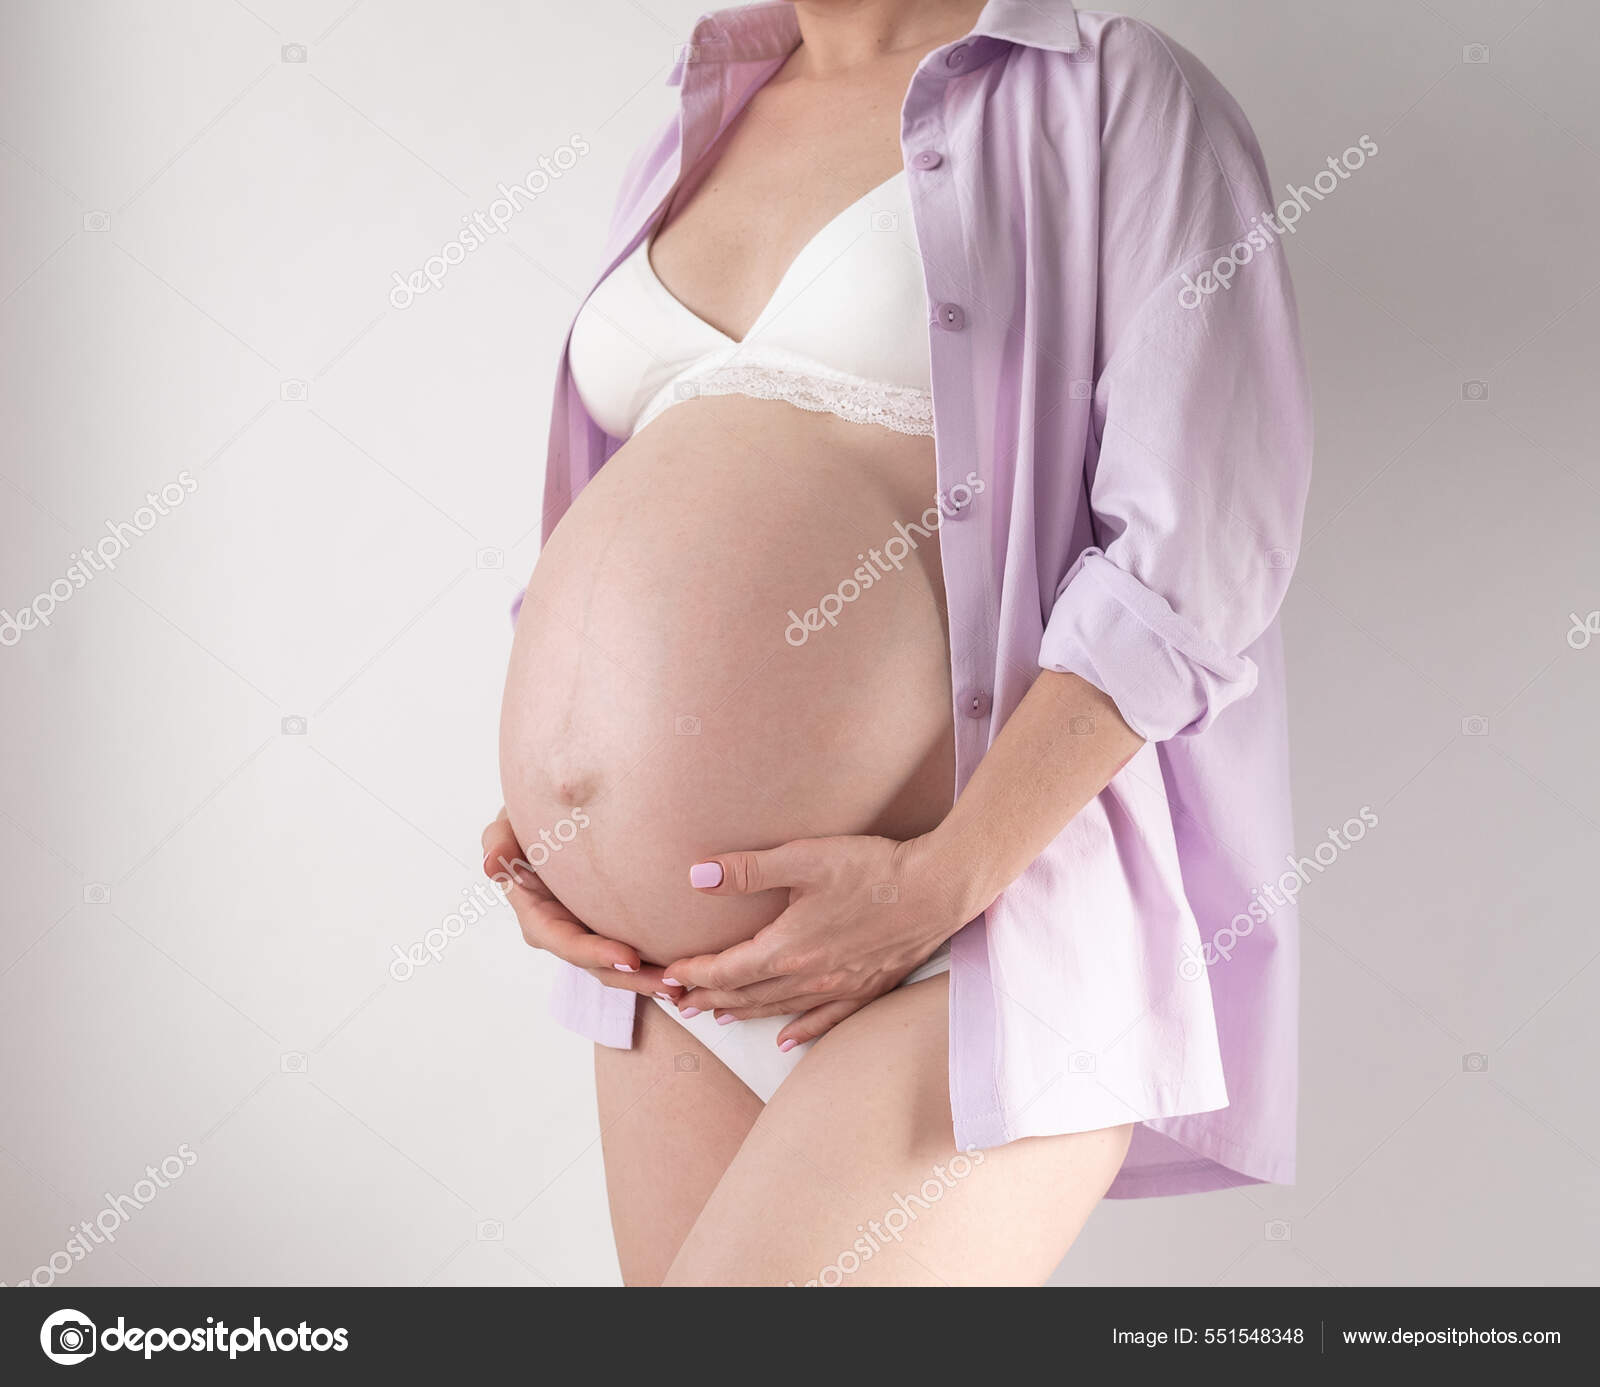 Una mujer embarazada en ropa interior y una camisa rosa sobre un fondo  blanco: fotografía de stock © conssuella #551548348